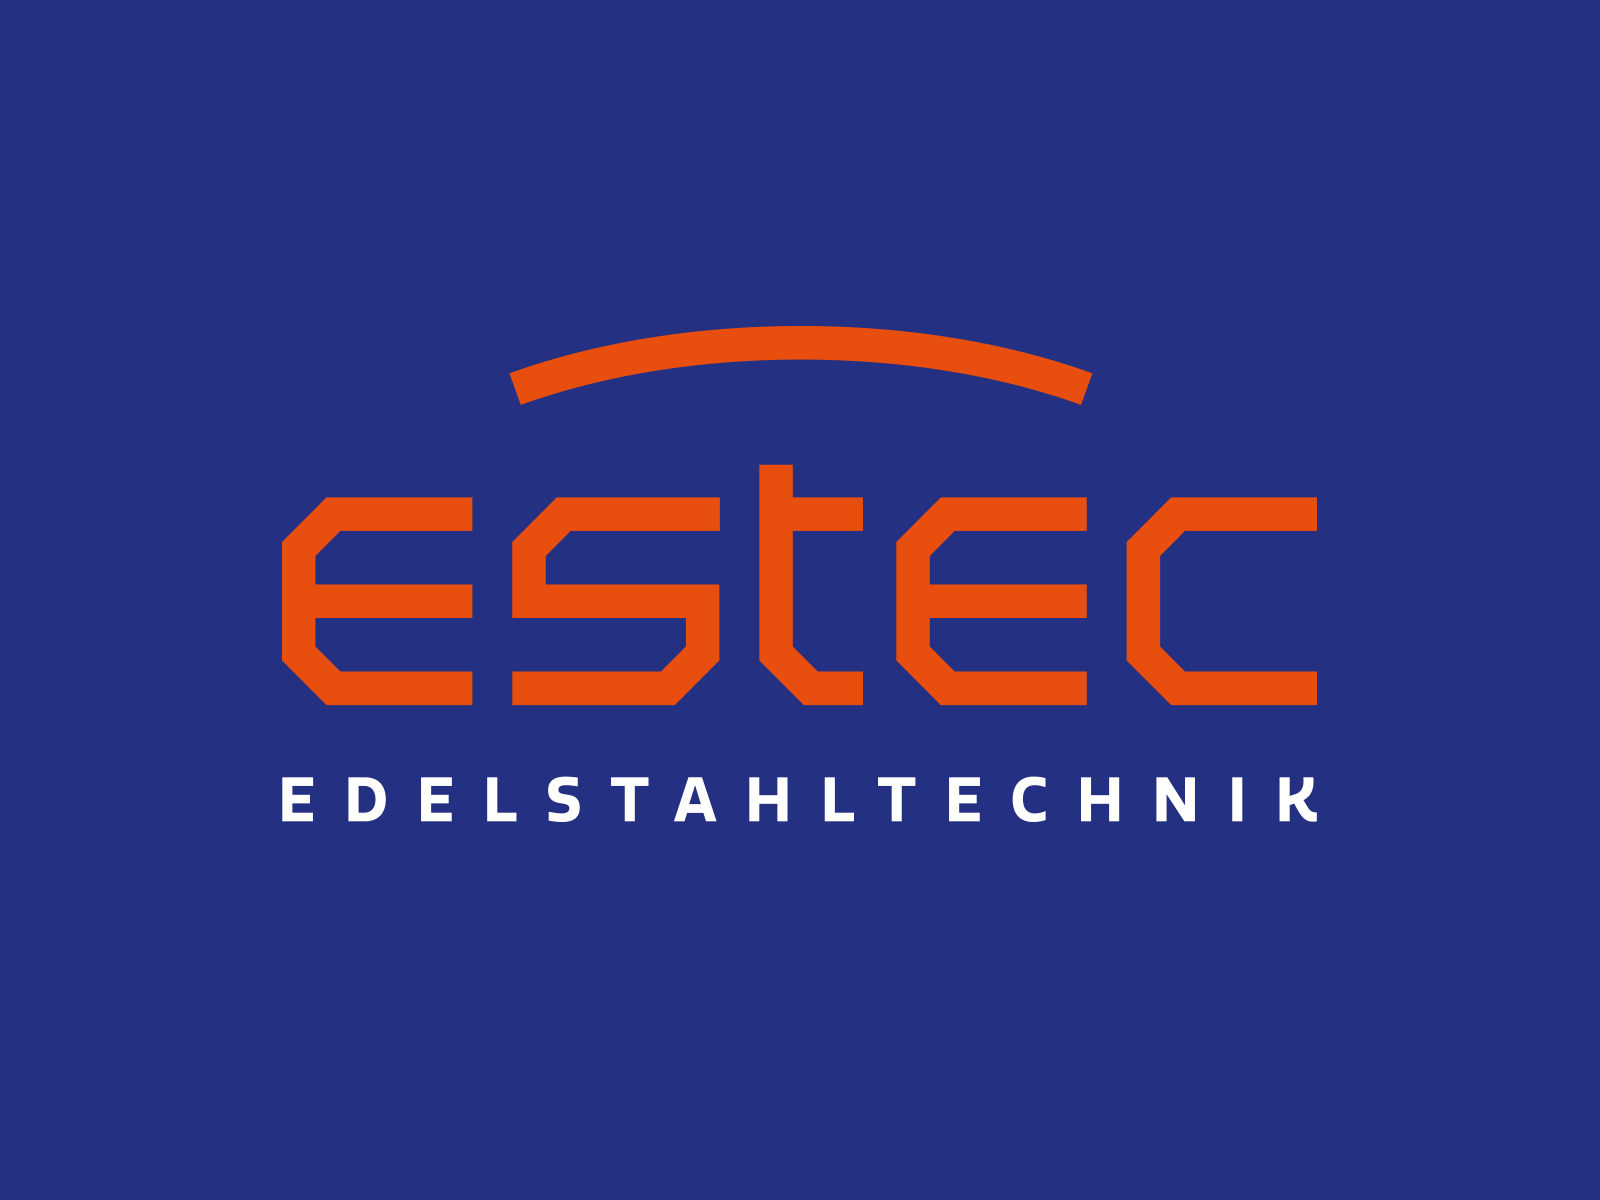 Estec Custom Type Logo